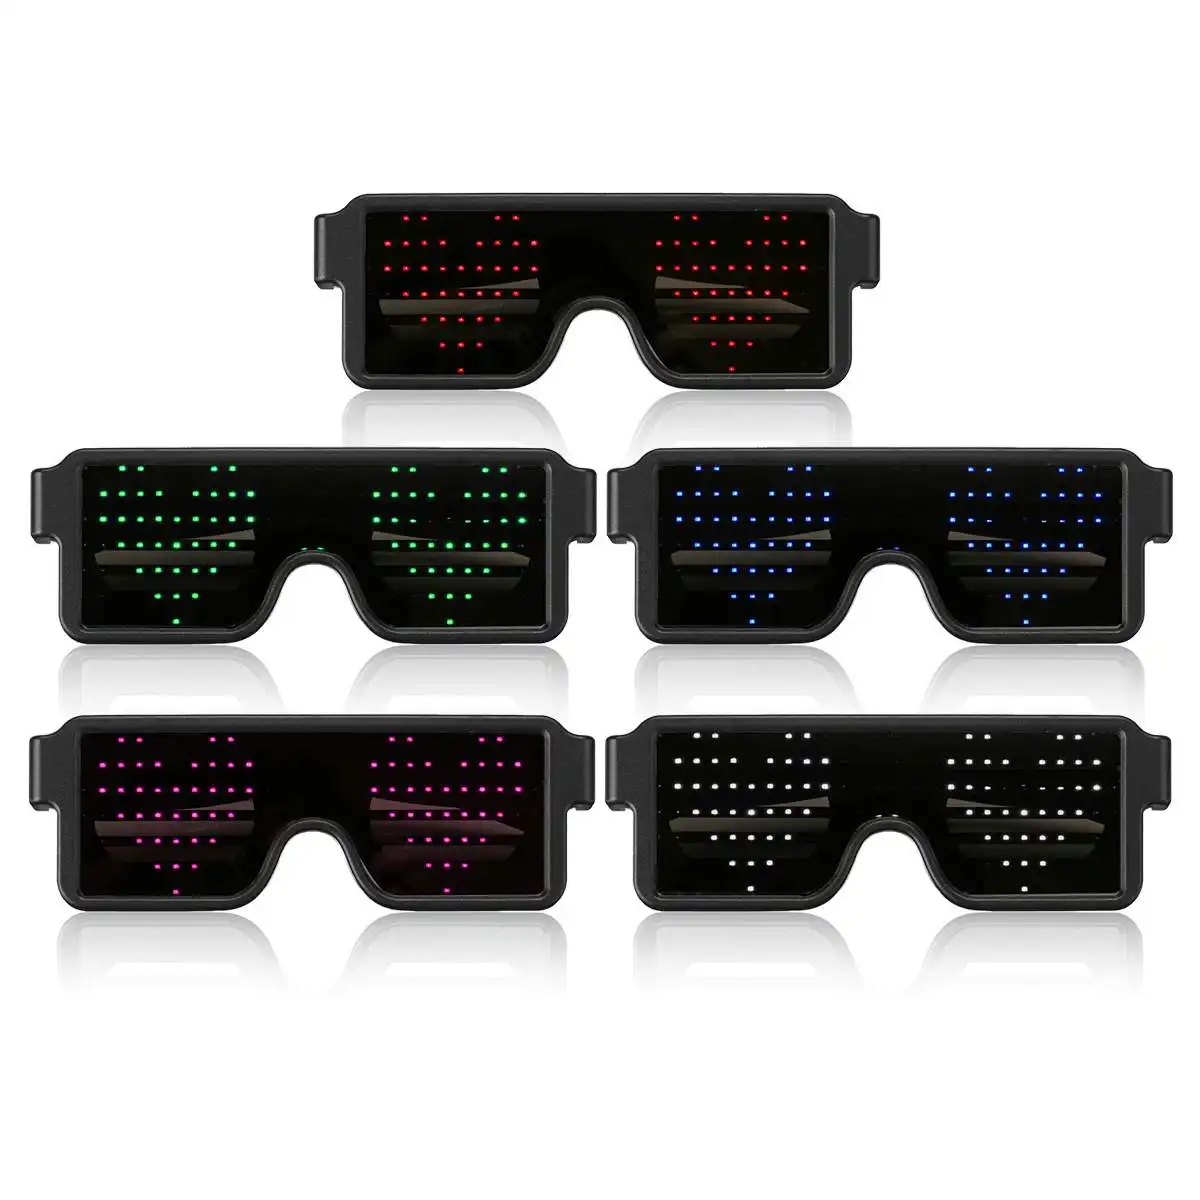 RaveLedメガネカラフルなUSB充電発光メガネ8種類のライトアップメガネハロウィンパーティーホリデー